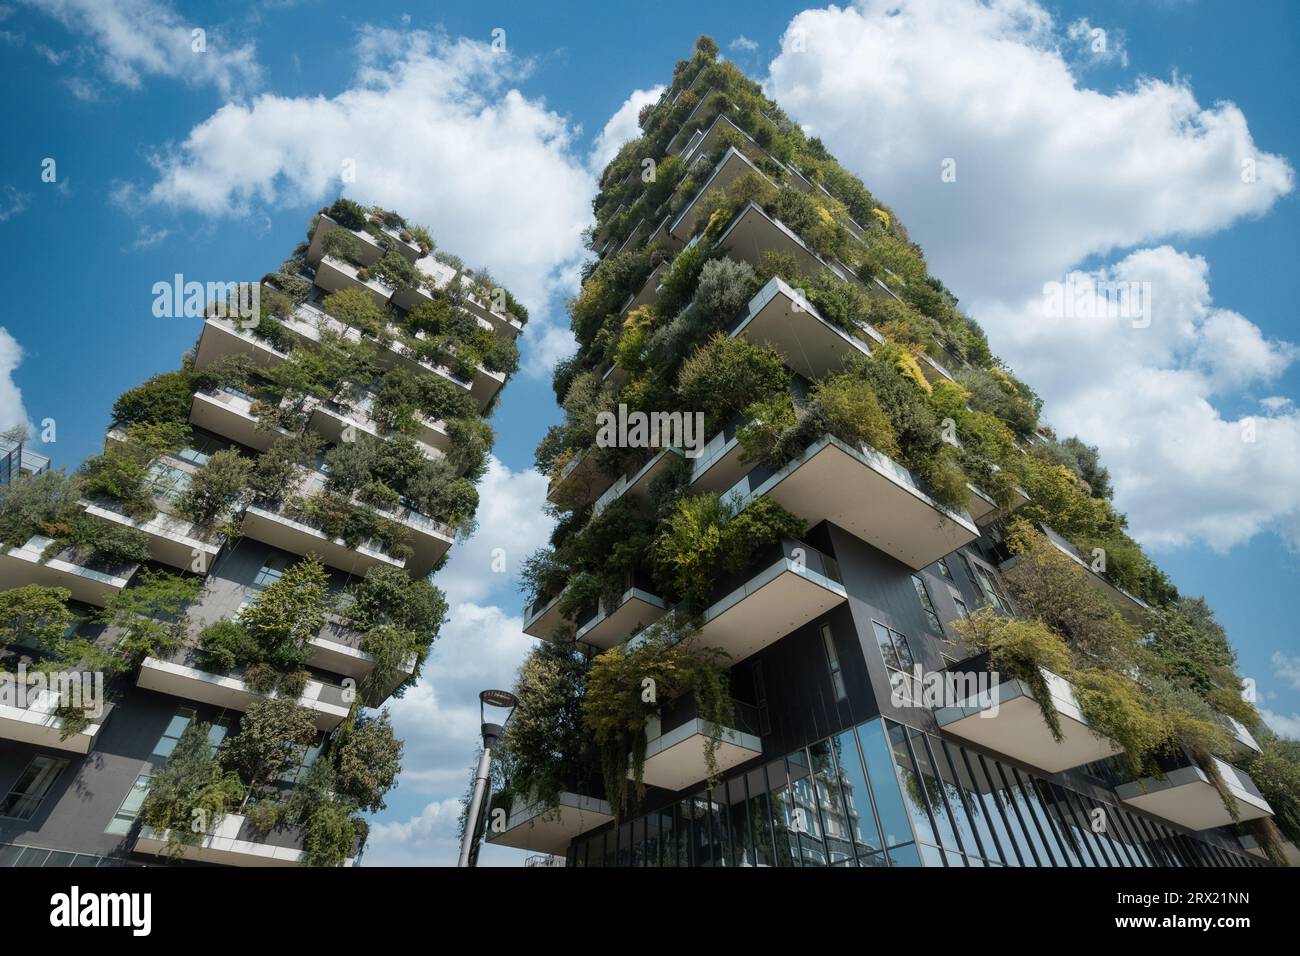 Edificios modernos de Bosco Verticale (Bosque Vertical) en el distrito de Porta Nuova de Milán, Italia. Foto de stock